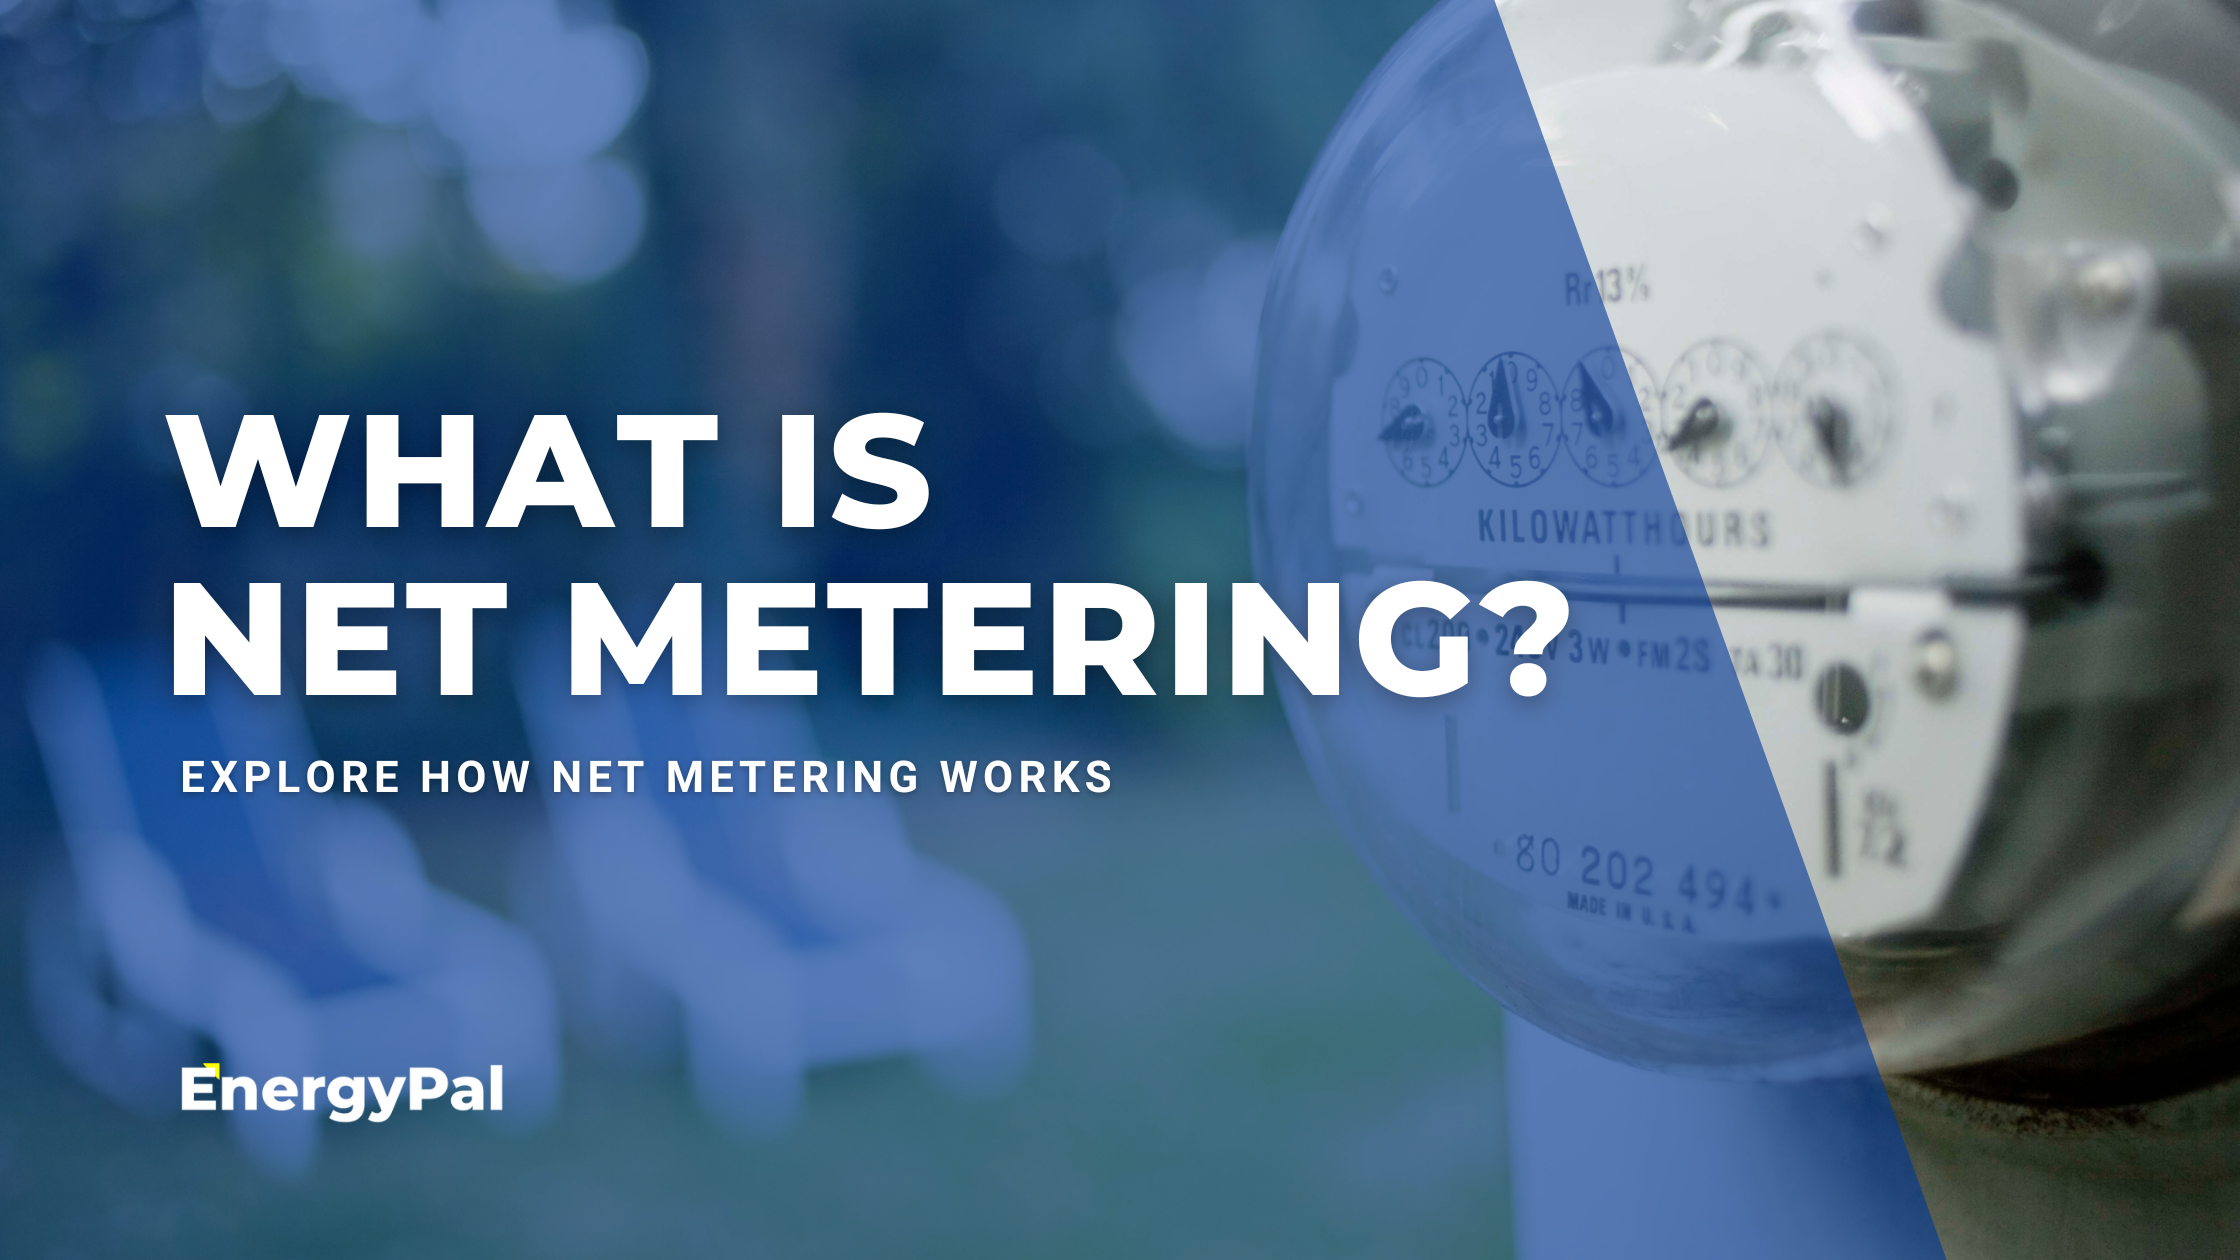 What is net metering?